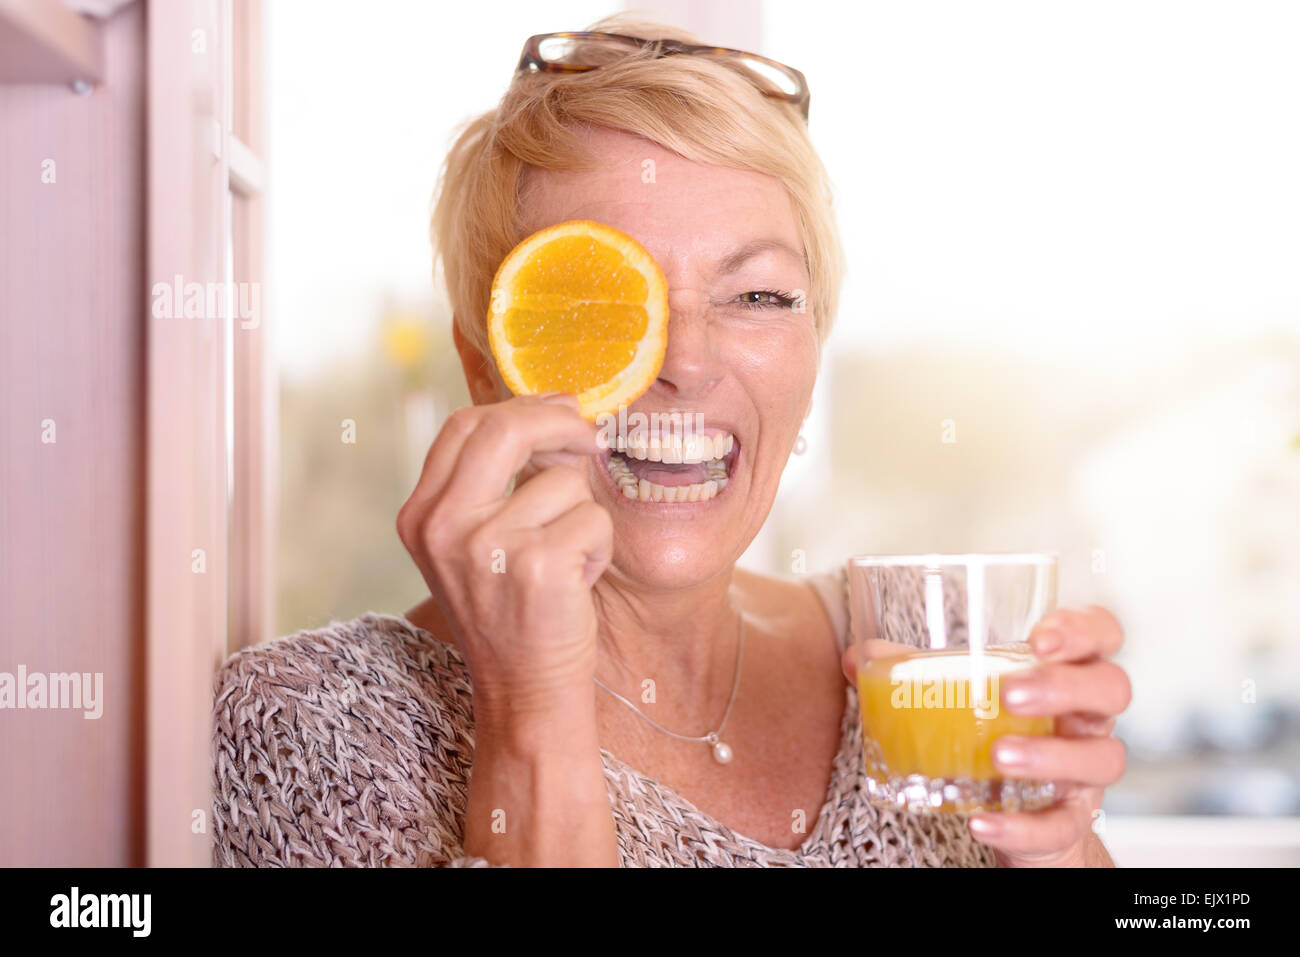 Lachend temperamentvollen blonde Frau mittleren Alters mit einer Orangenscheibe für ihr Auge halten Sie ein Glas frisch gepresster Orangensaft Stockfoto